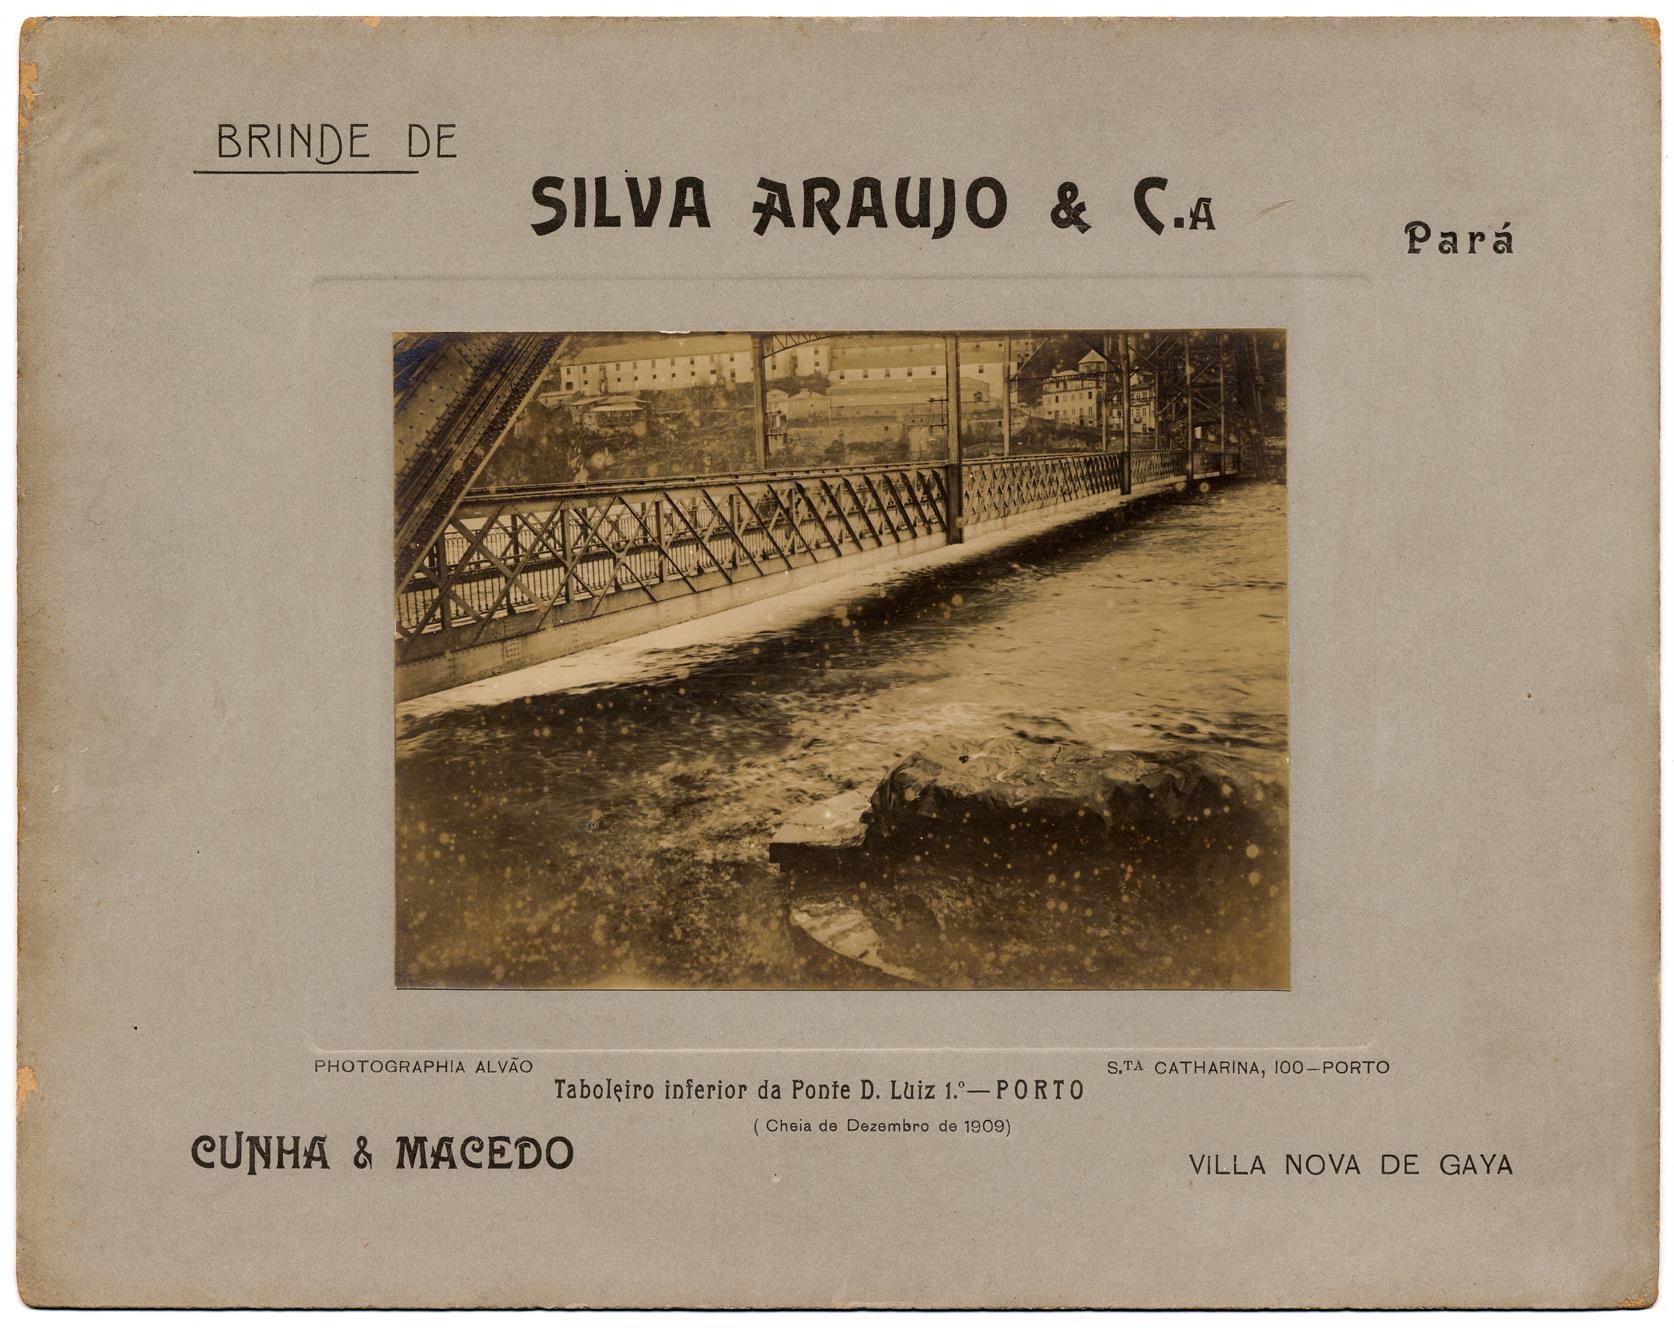 Cheia de Dezembro de 1909 : Tabuleiro inferior da Ponte D. Luiz 1º. : Porto